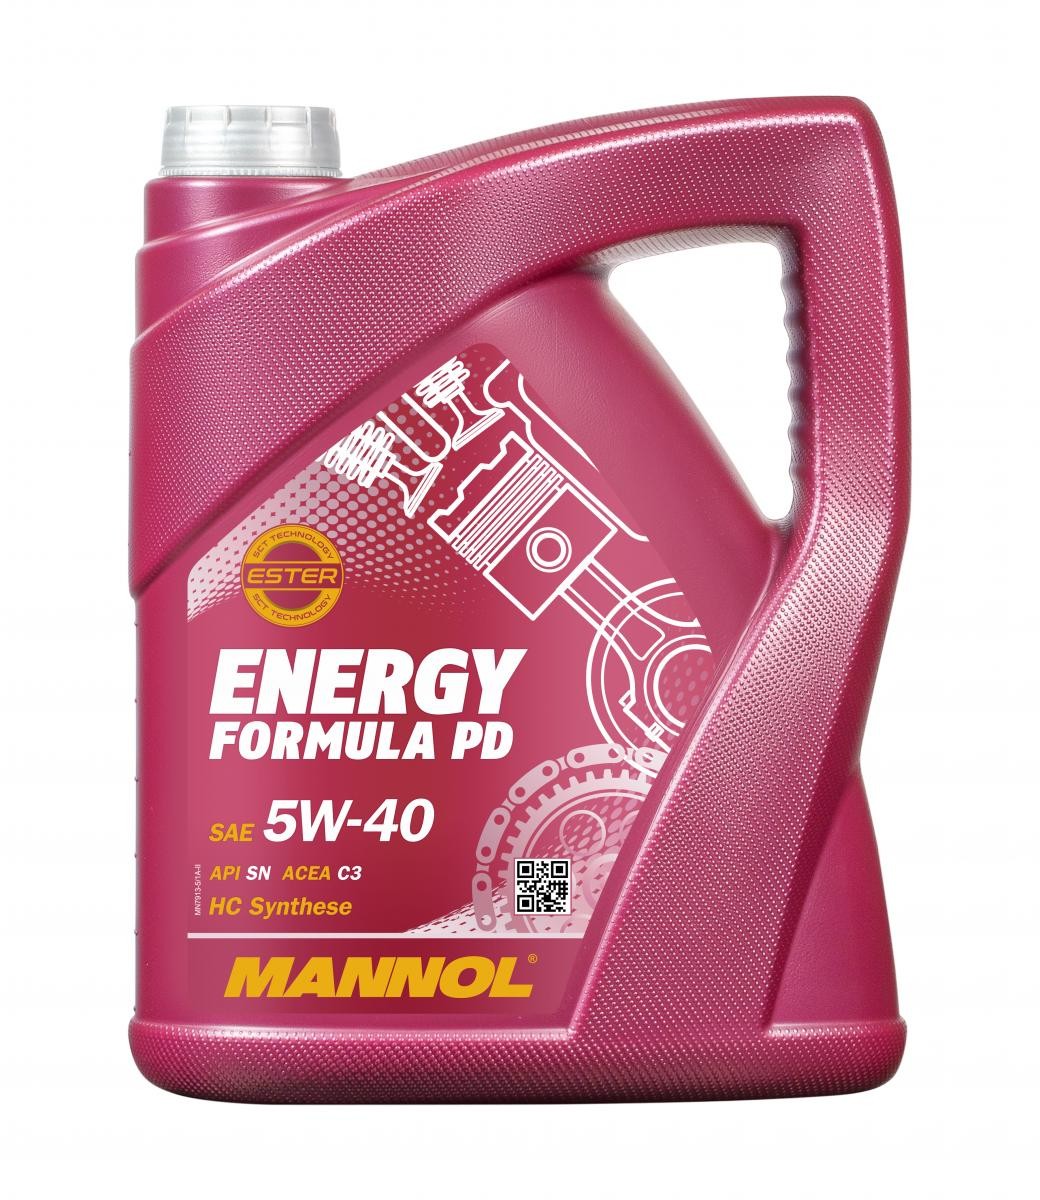 MANNOL ENERGY FORMULA PD MN7913-5 Moottoriöljy 5W-40, 5l, Täysisynteetinen öljy